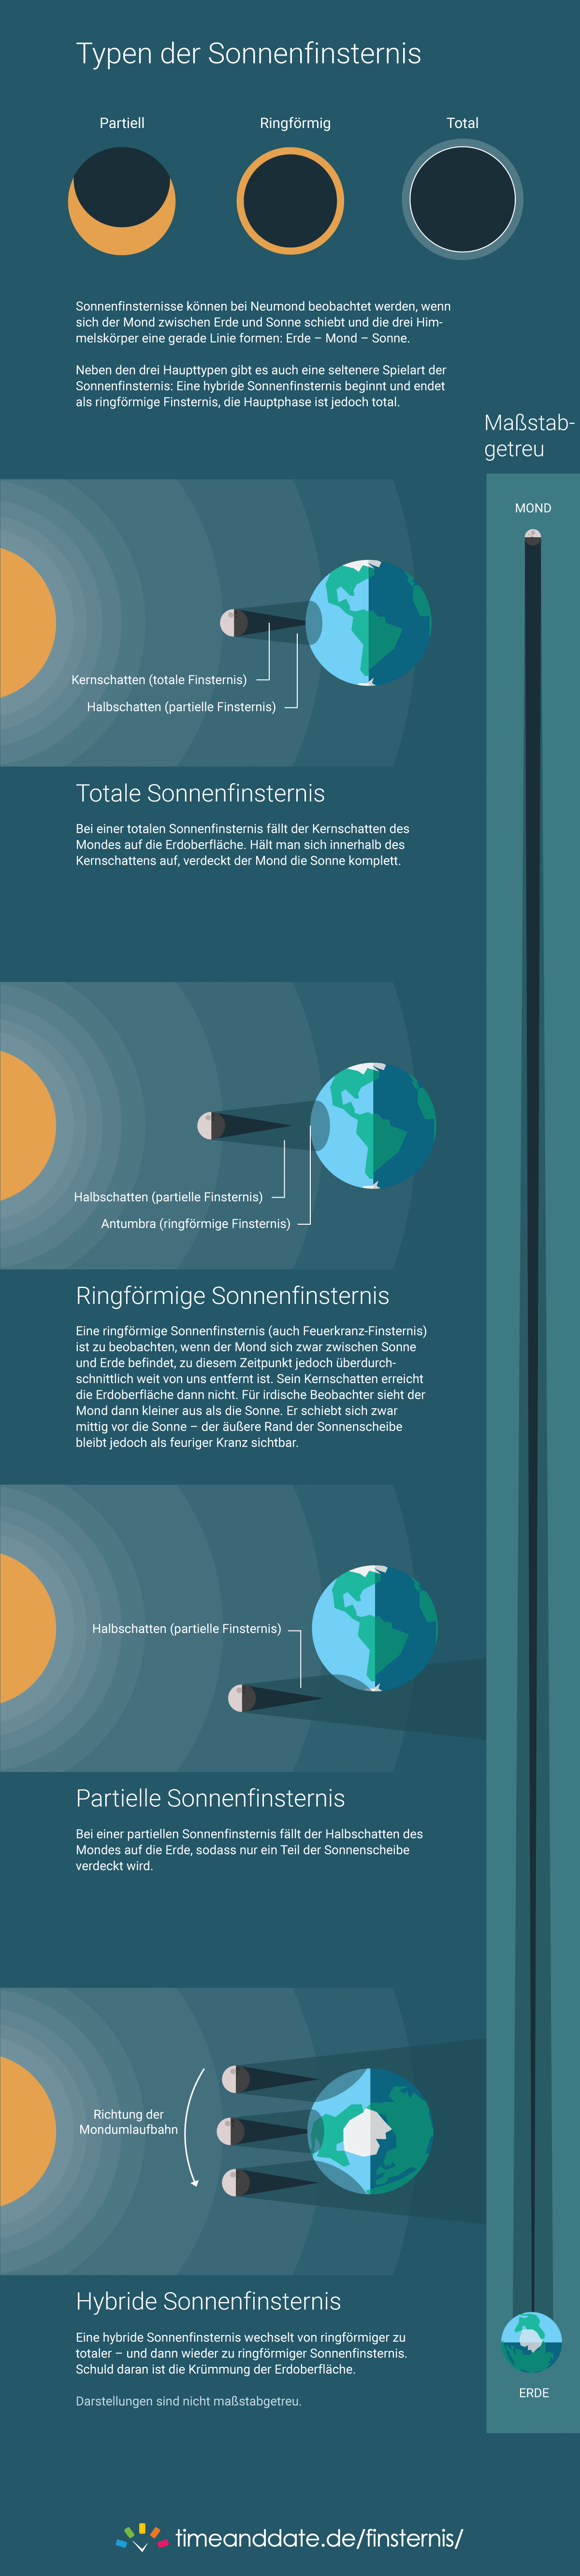 Infografik: Typen von Sonnenfinsternissen